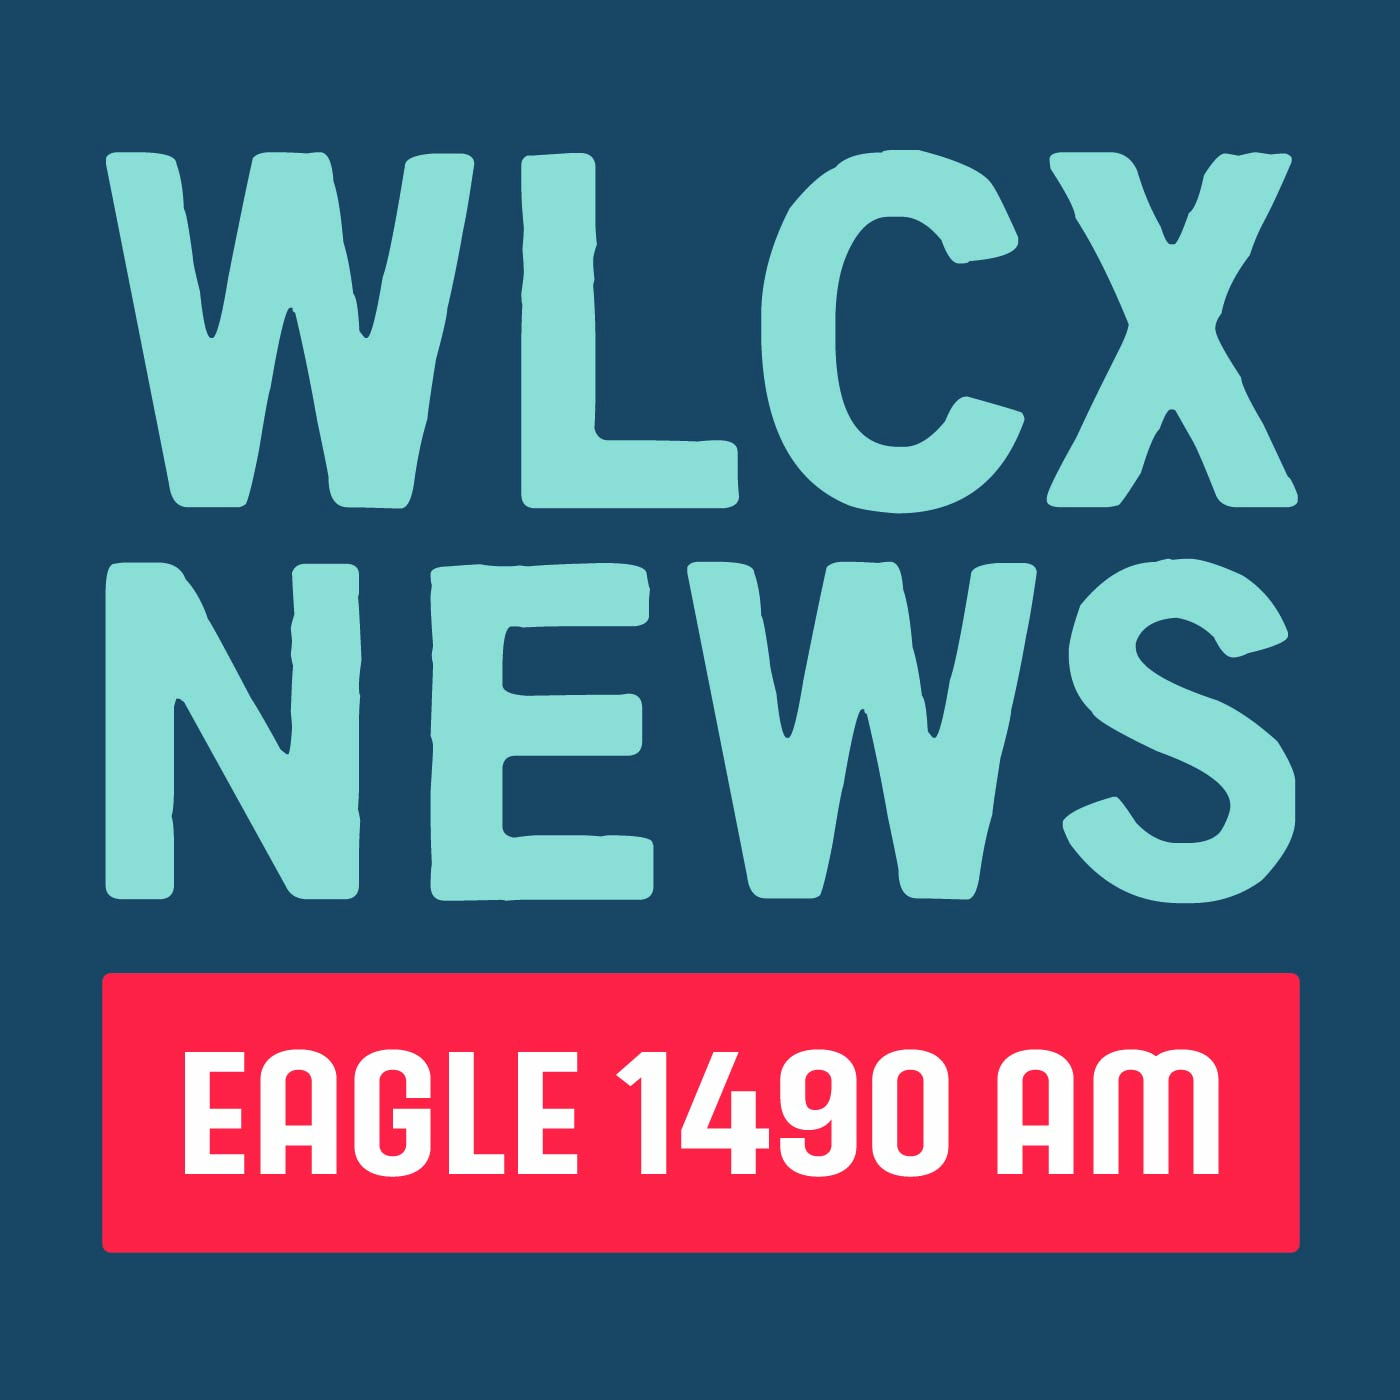 WLCX News